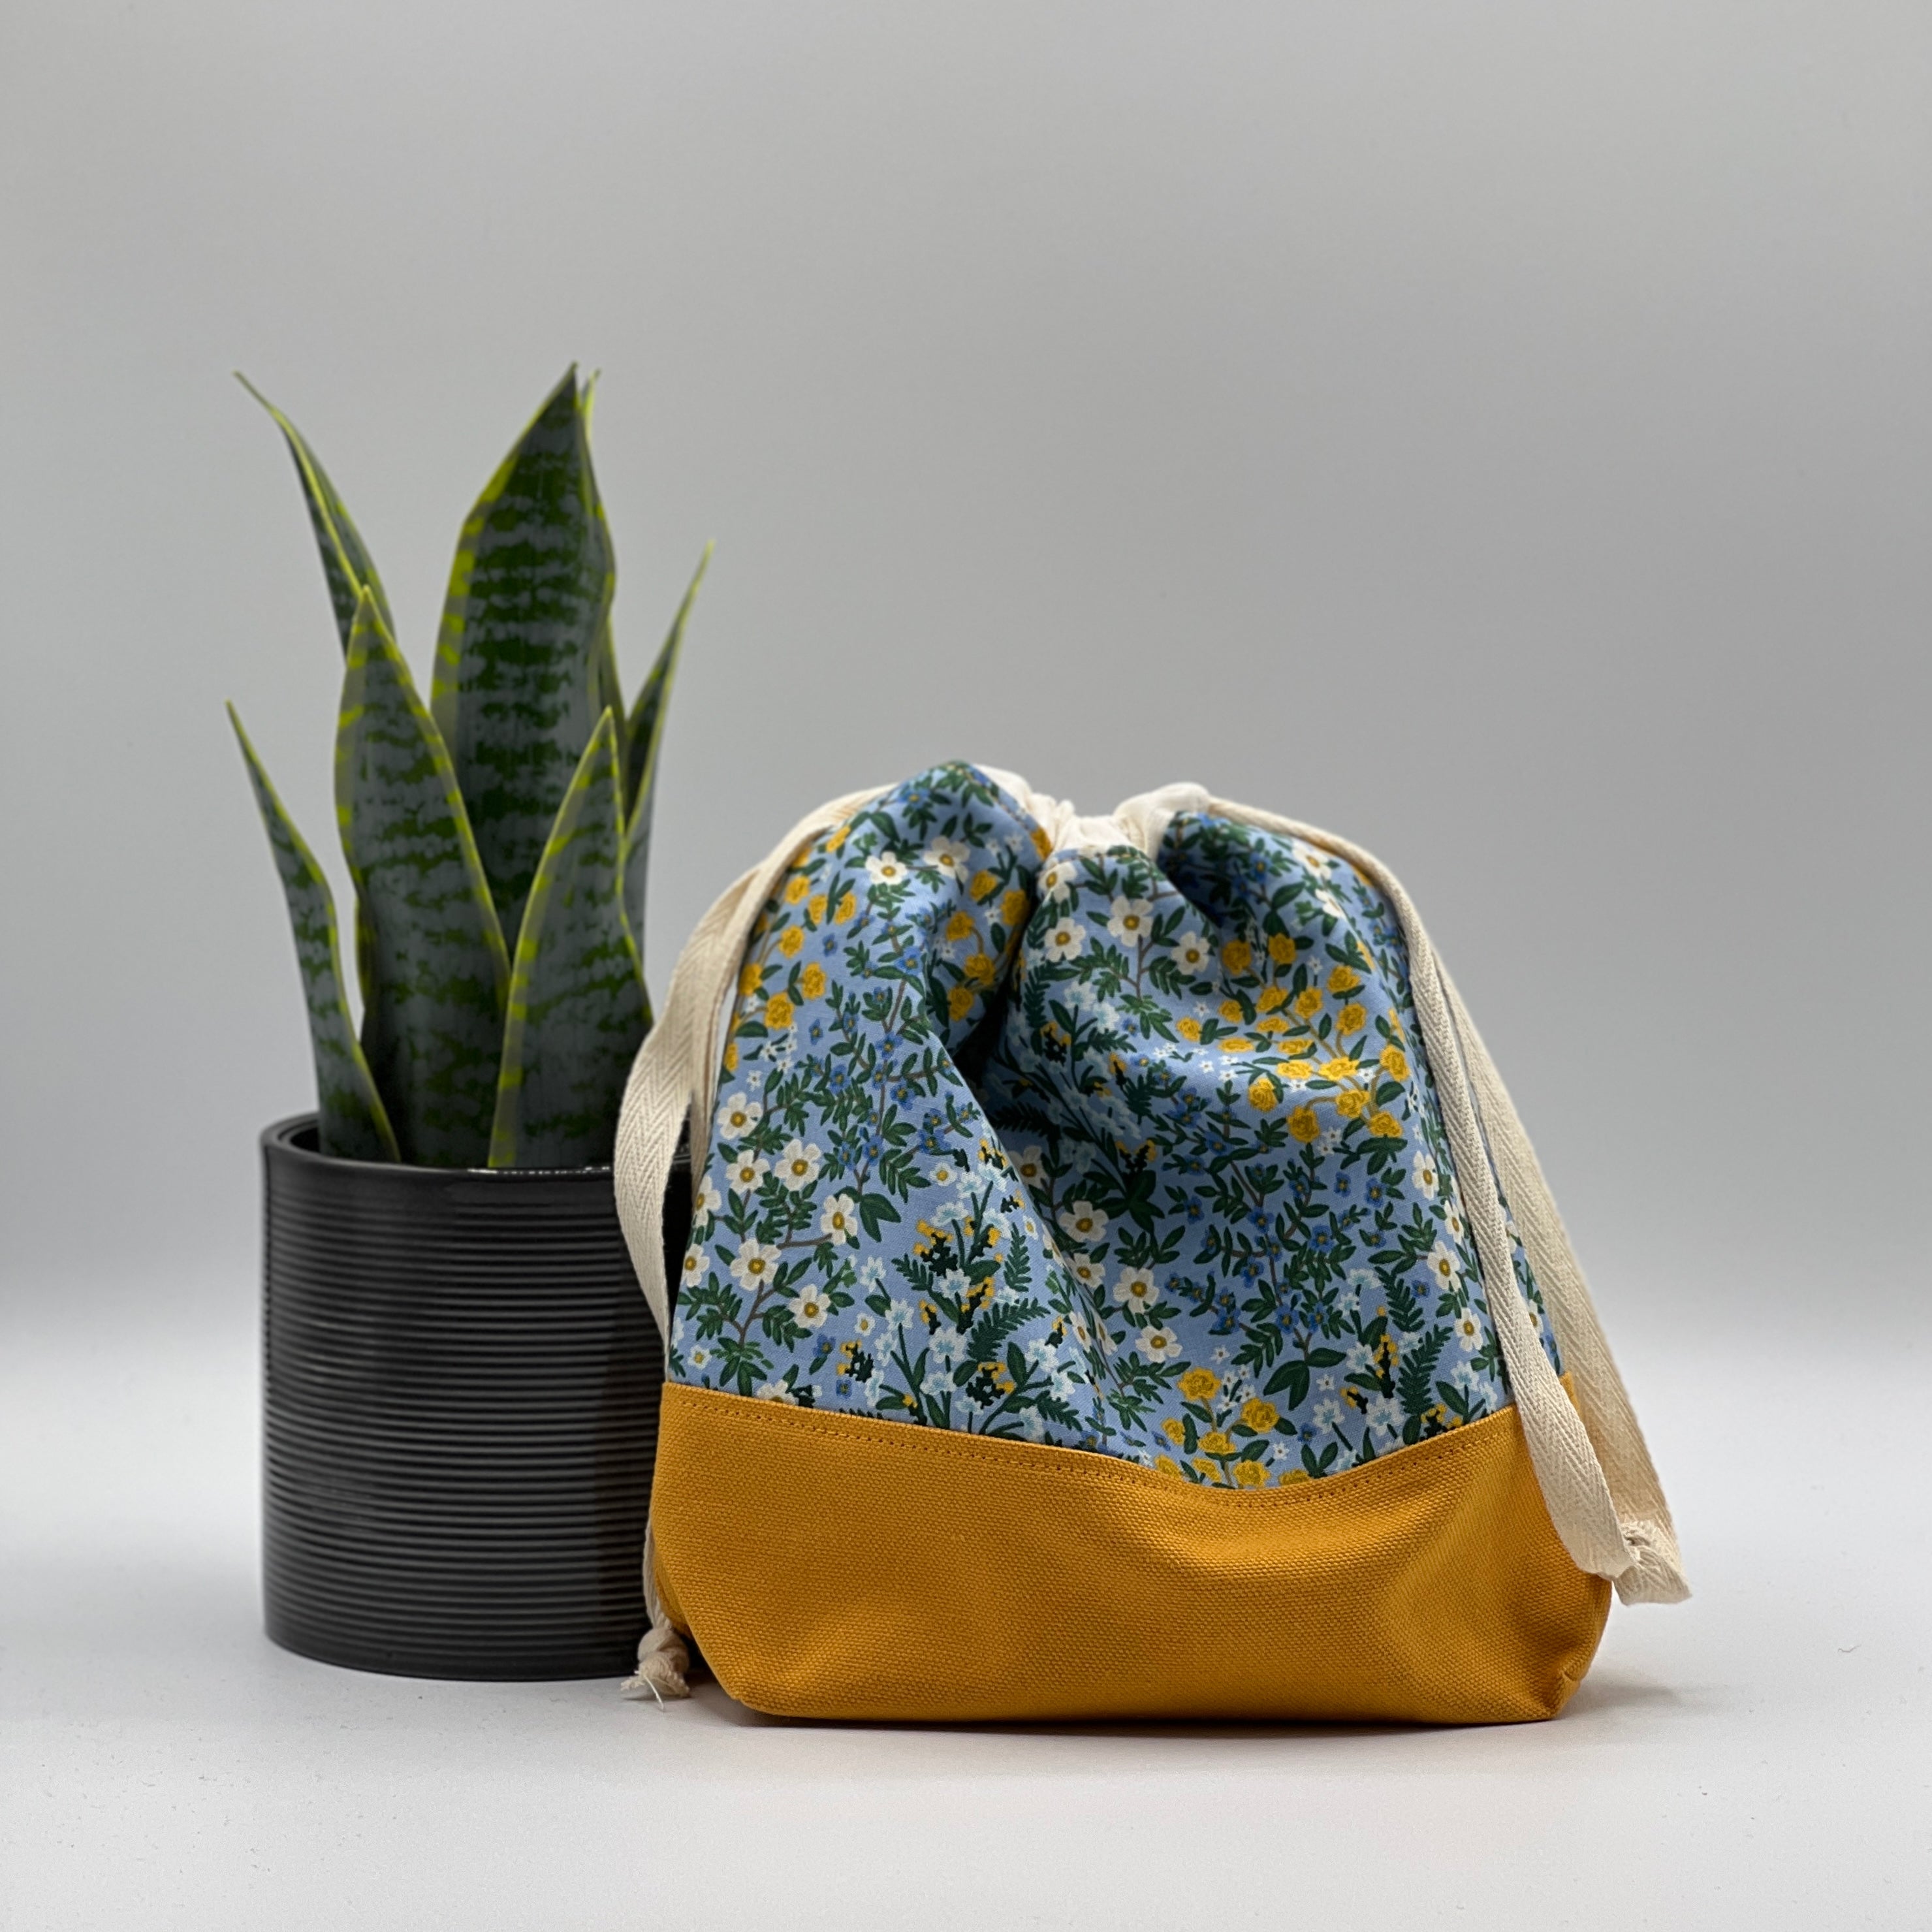 Petit sac à projet / Small project bag - Camont - Wildwood Garden - Bleu